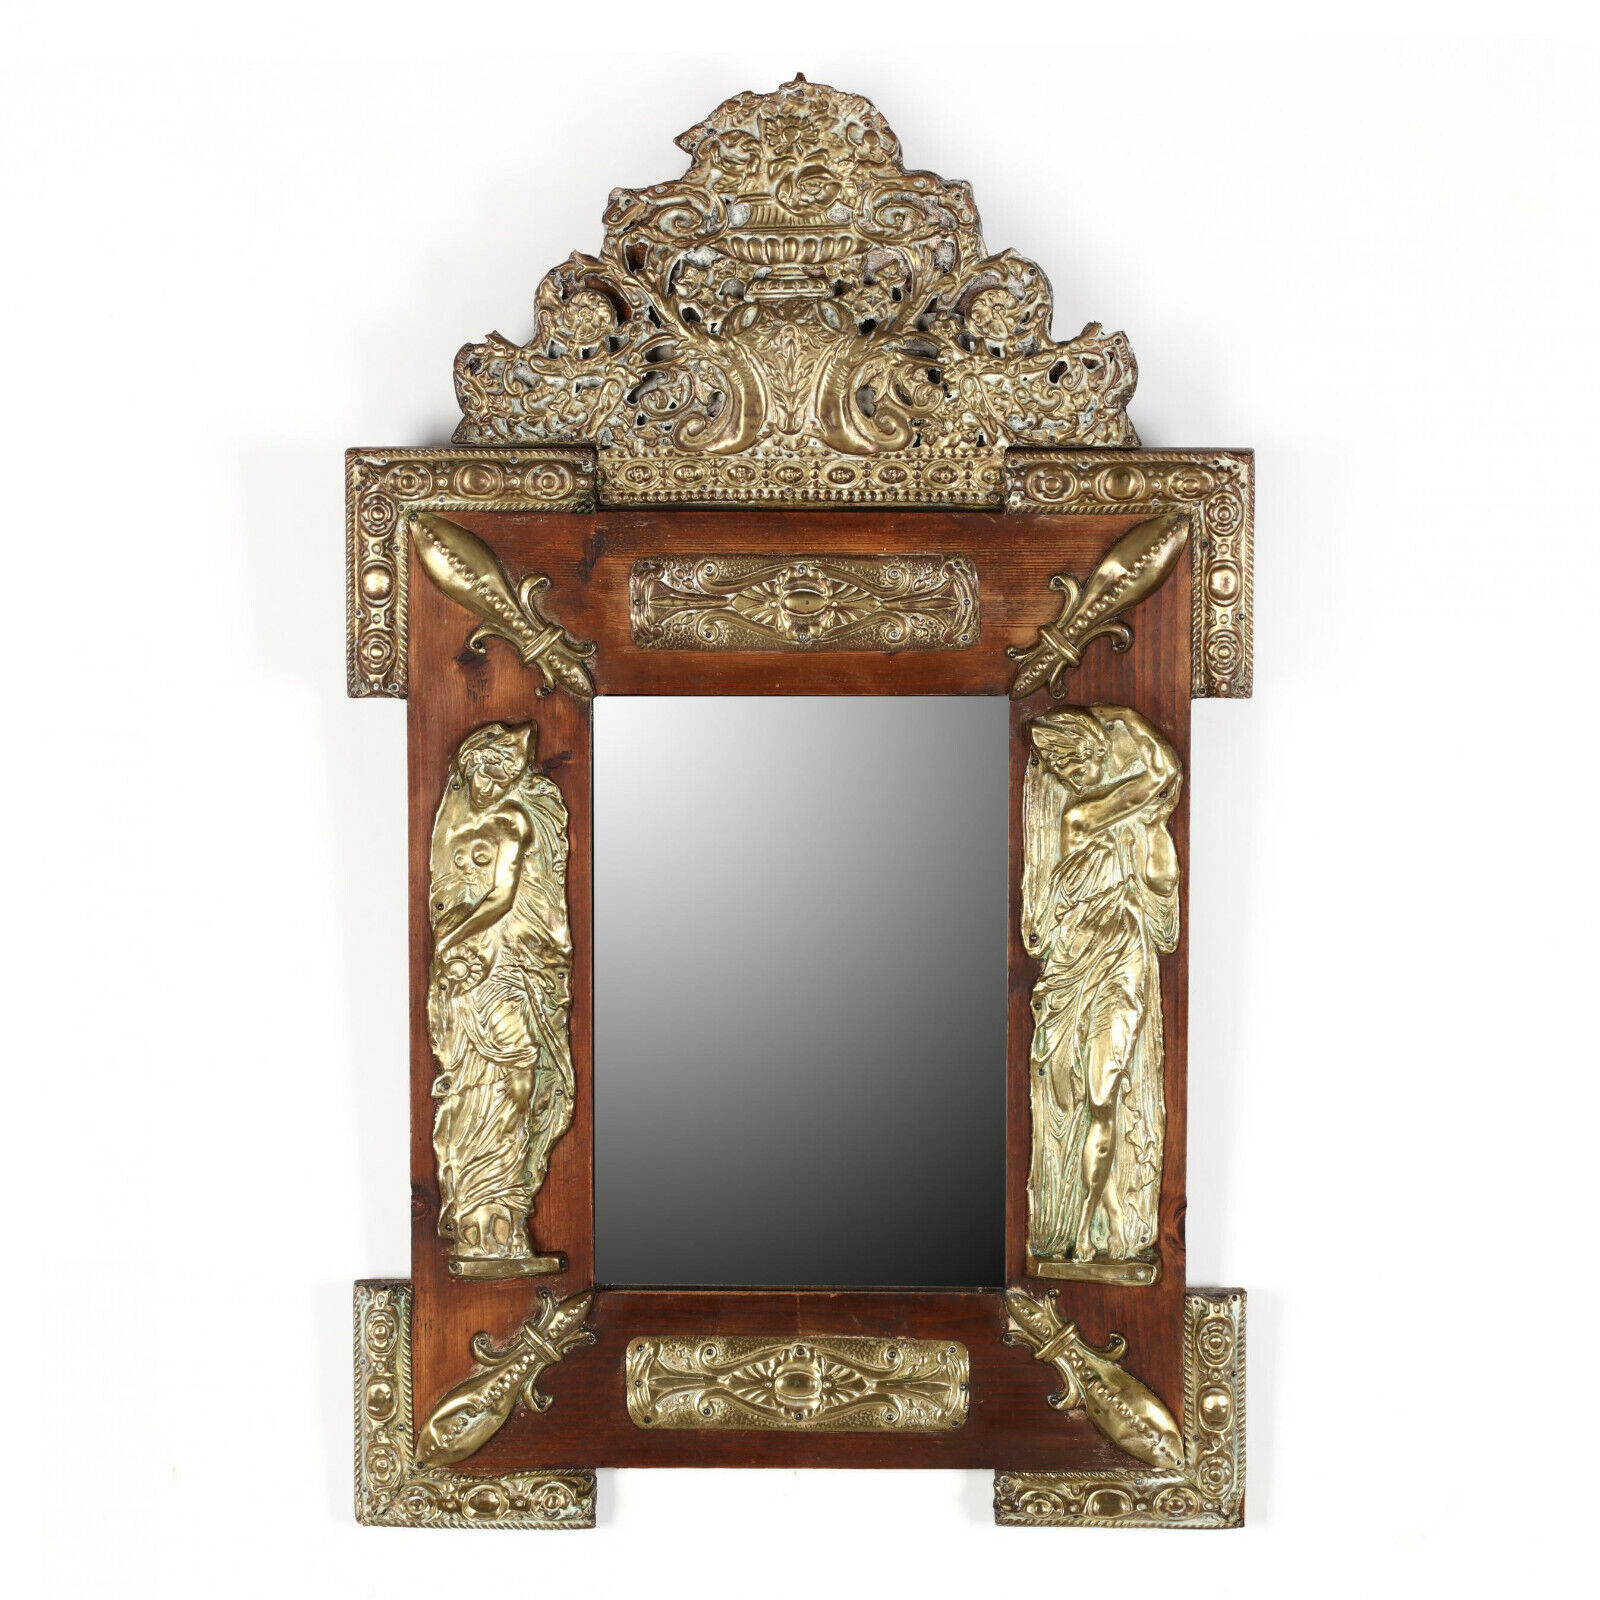  Antique Mirror, Ornate, Continental Repousse, Pine,  1800s, Gorgeous Decor!